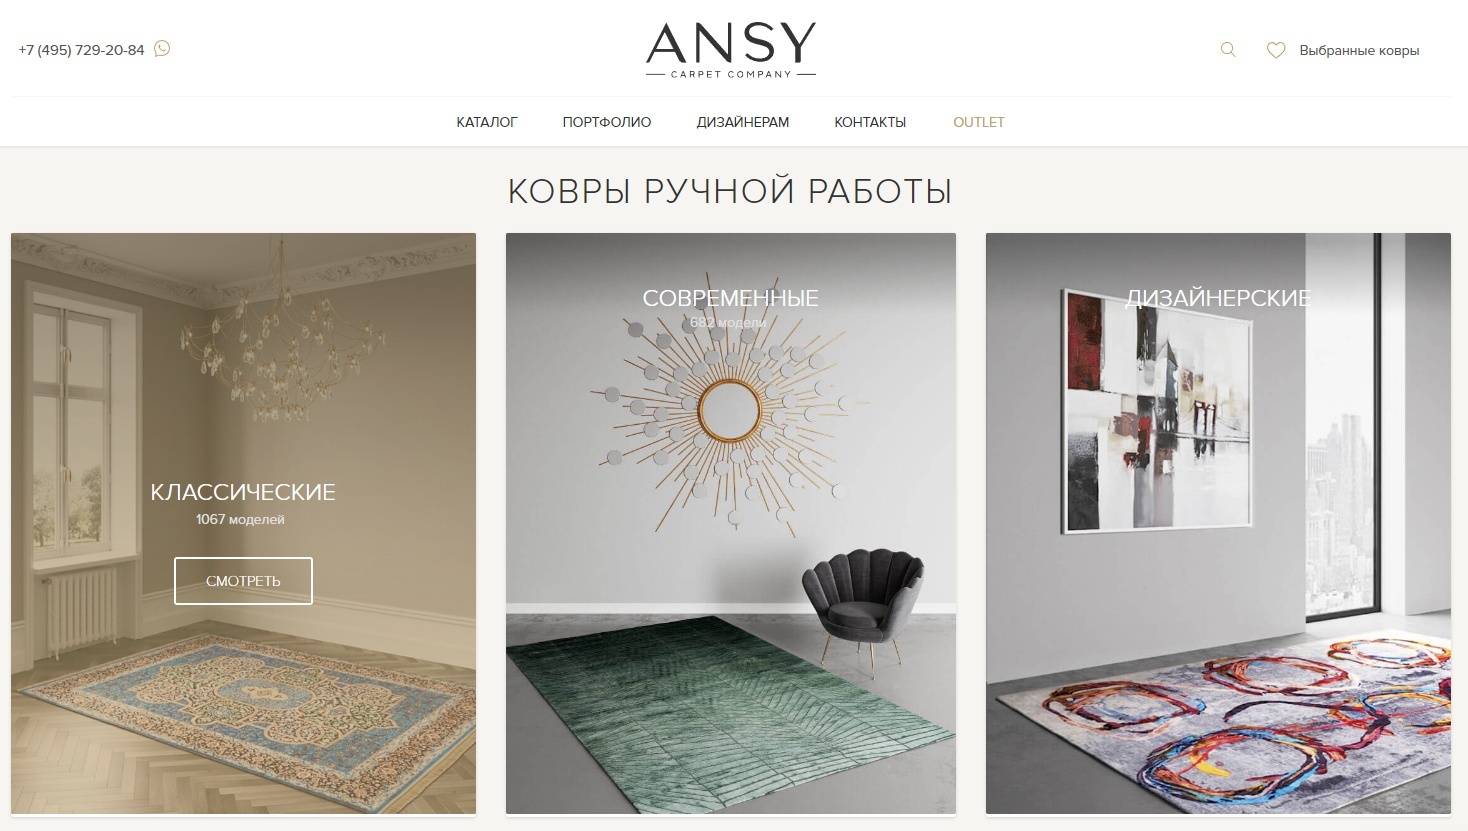 ANSY Carpet Company